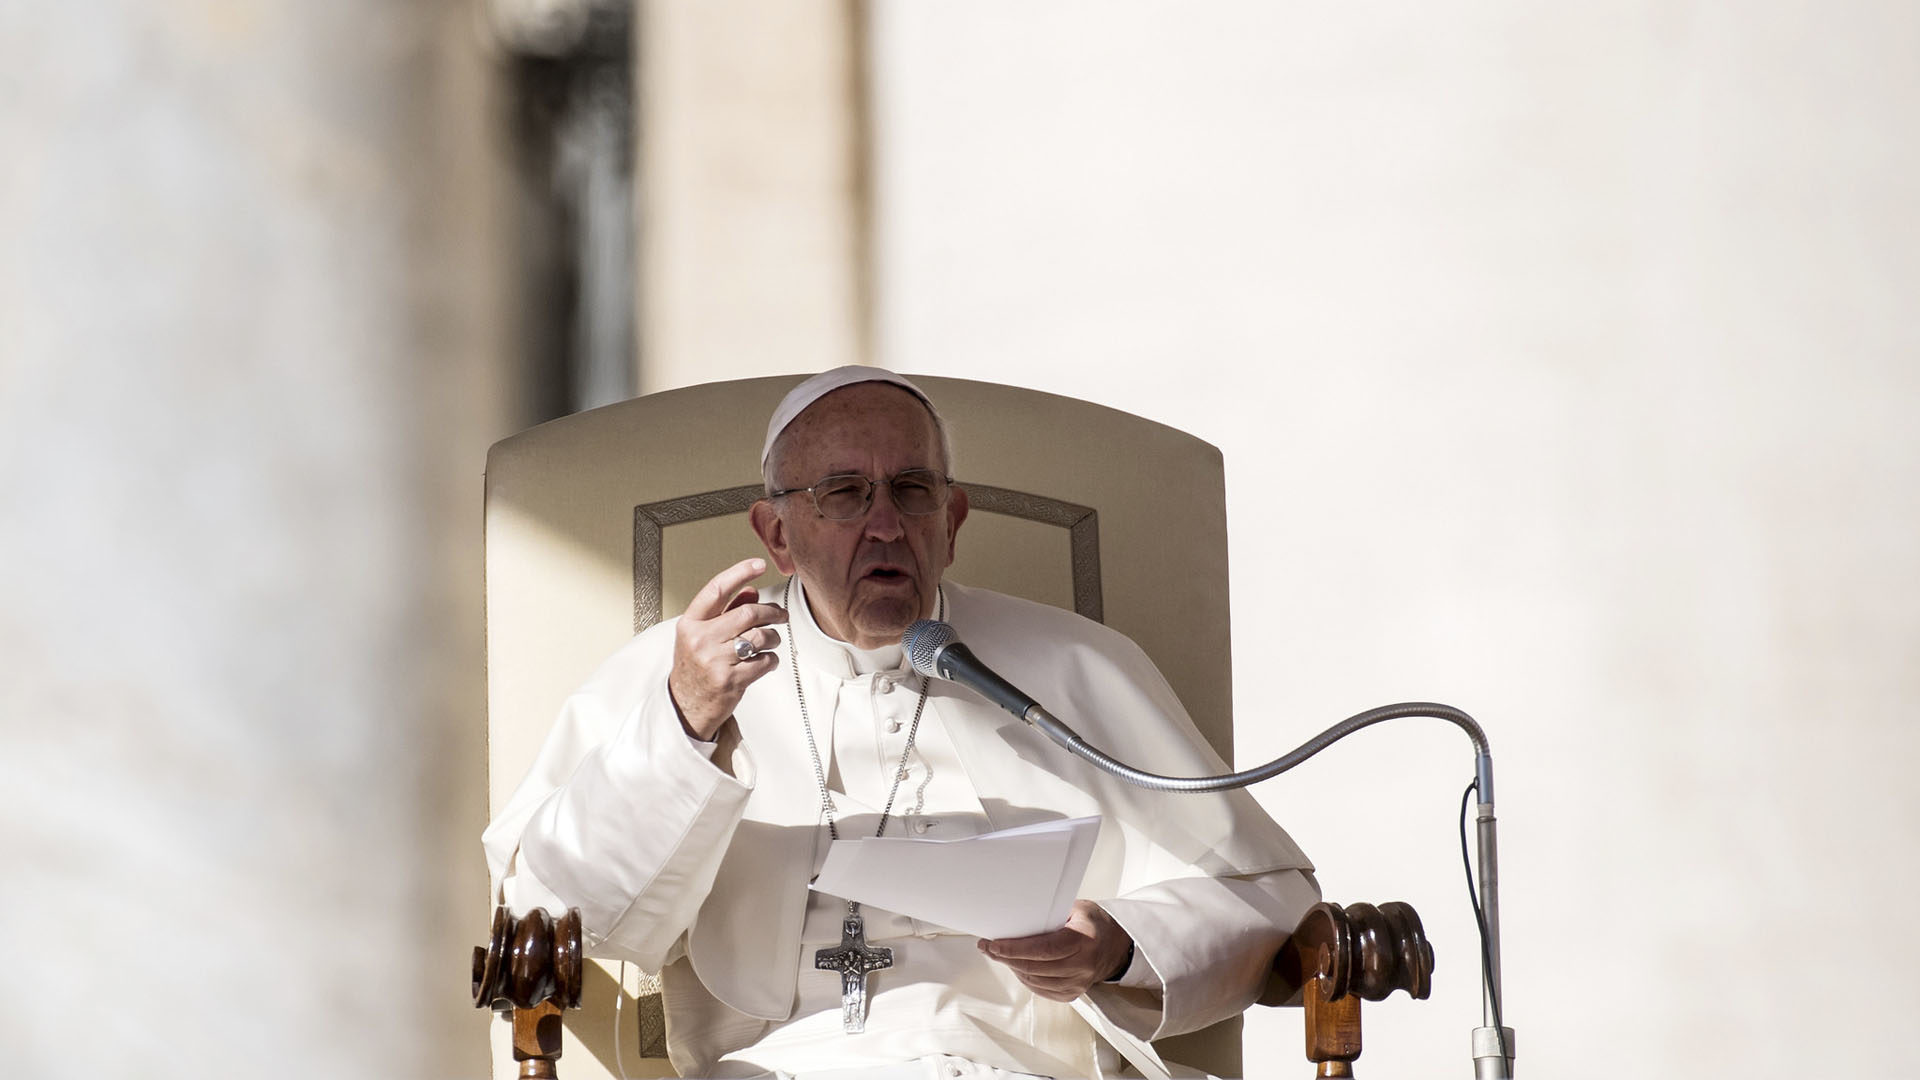 "Avec l’Esprit Saint, l’espérance est invincible", a lancé le pape à l'audience générale place Saint-pierre ce 31 mai 2017. (Photo: Flickr/Mazur/catholicnews.org.uk/CC BY-NC-SA 2.0)